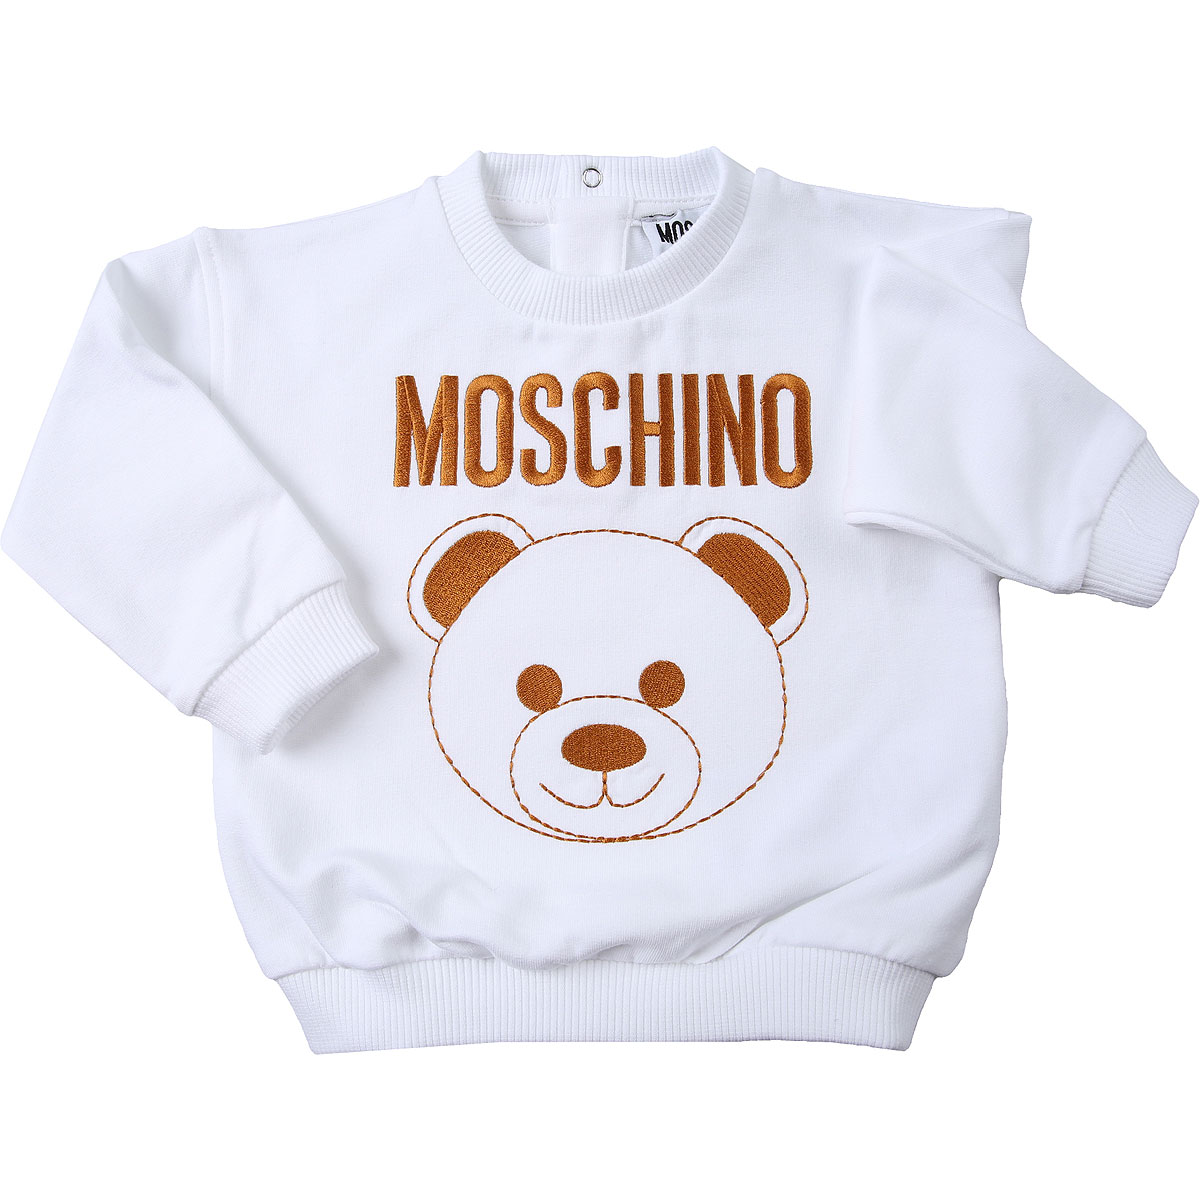 Moschino Baby Sweatshirt & Kapuzenpullover für Mädchen Günstig im Sale, Weiss, Baumwolle, 2017, 12M 18M 24M 2Y 3Y 6M 9M